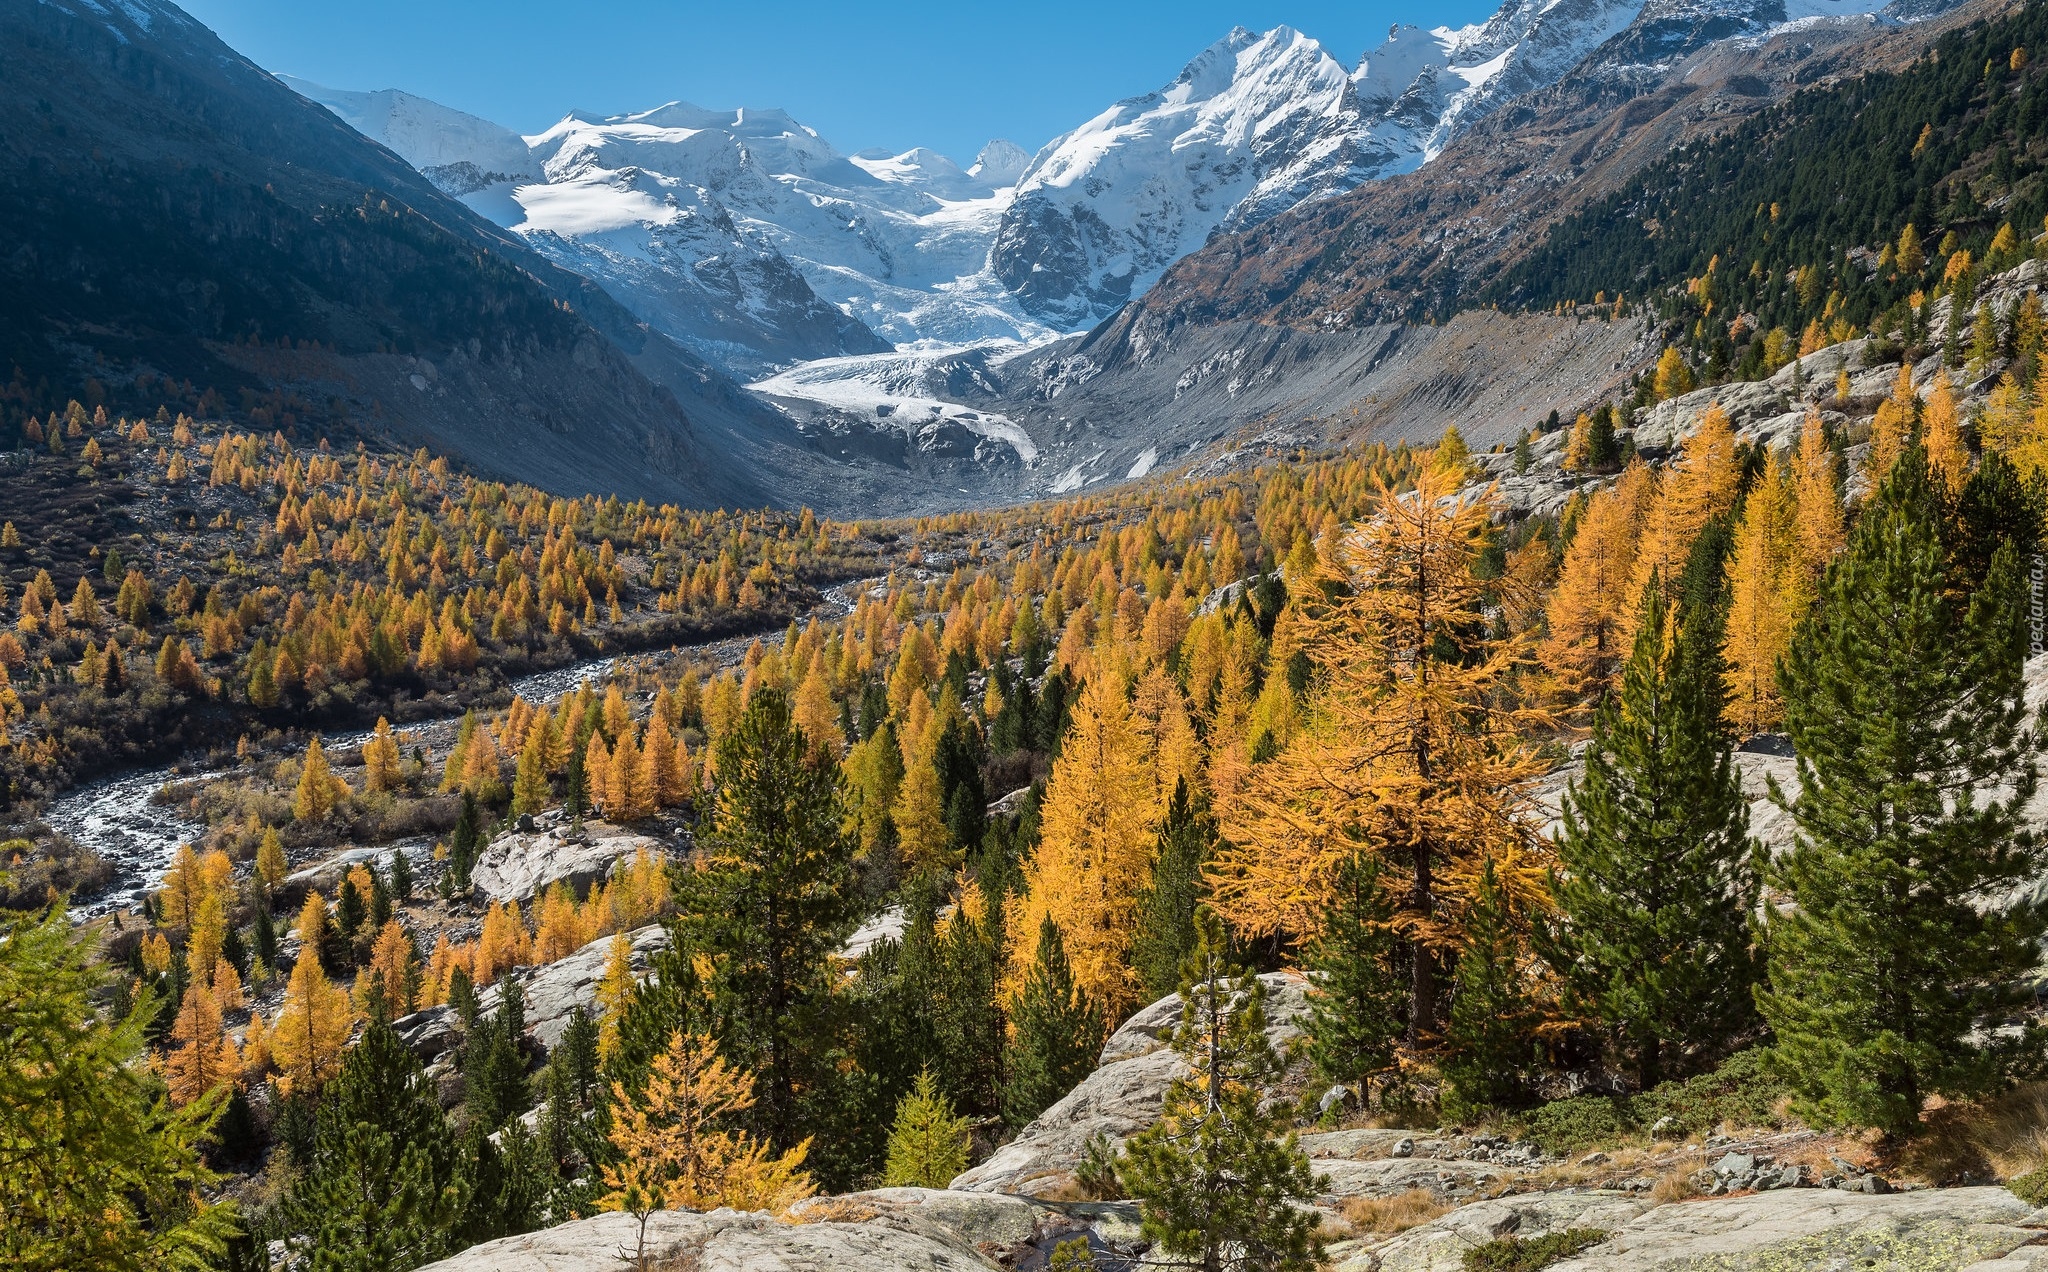 Jesień, Góry, Skały, Żółte, Drzewa, Lodowiec Morteratschgletscher, Kanton Gryzonia, Szwajcaria